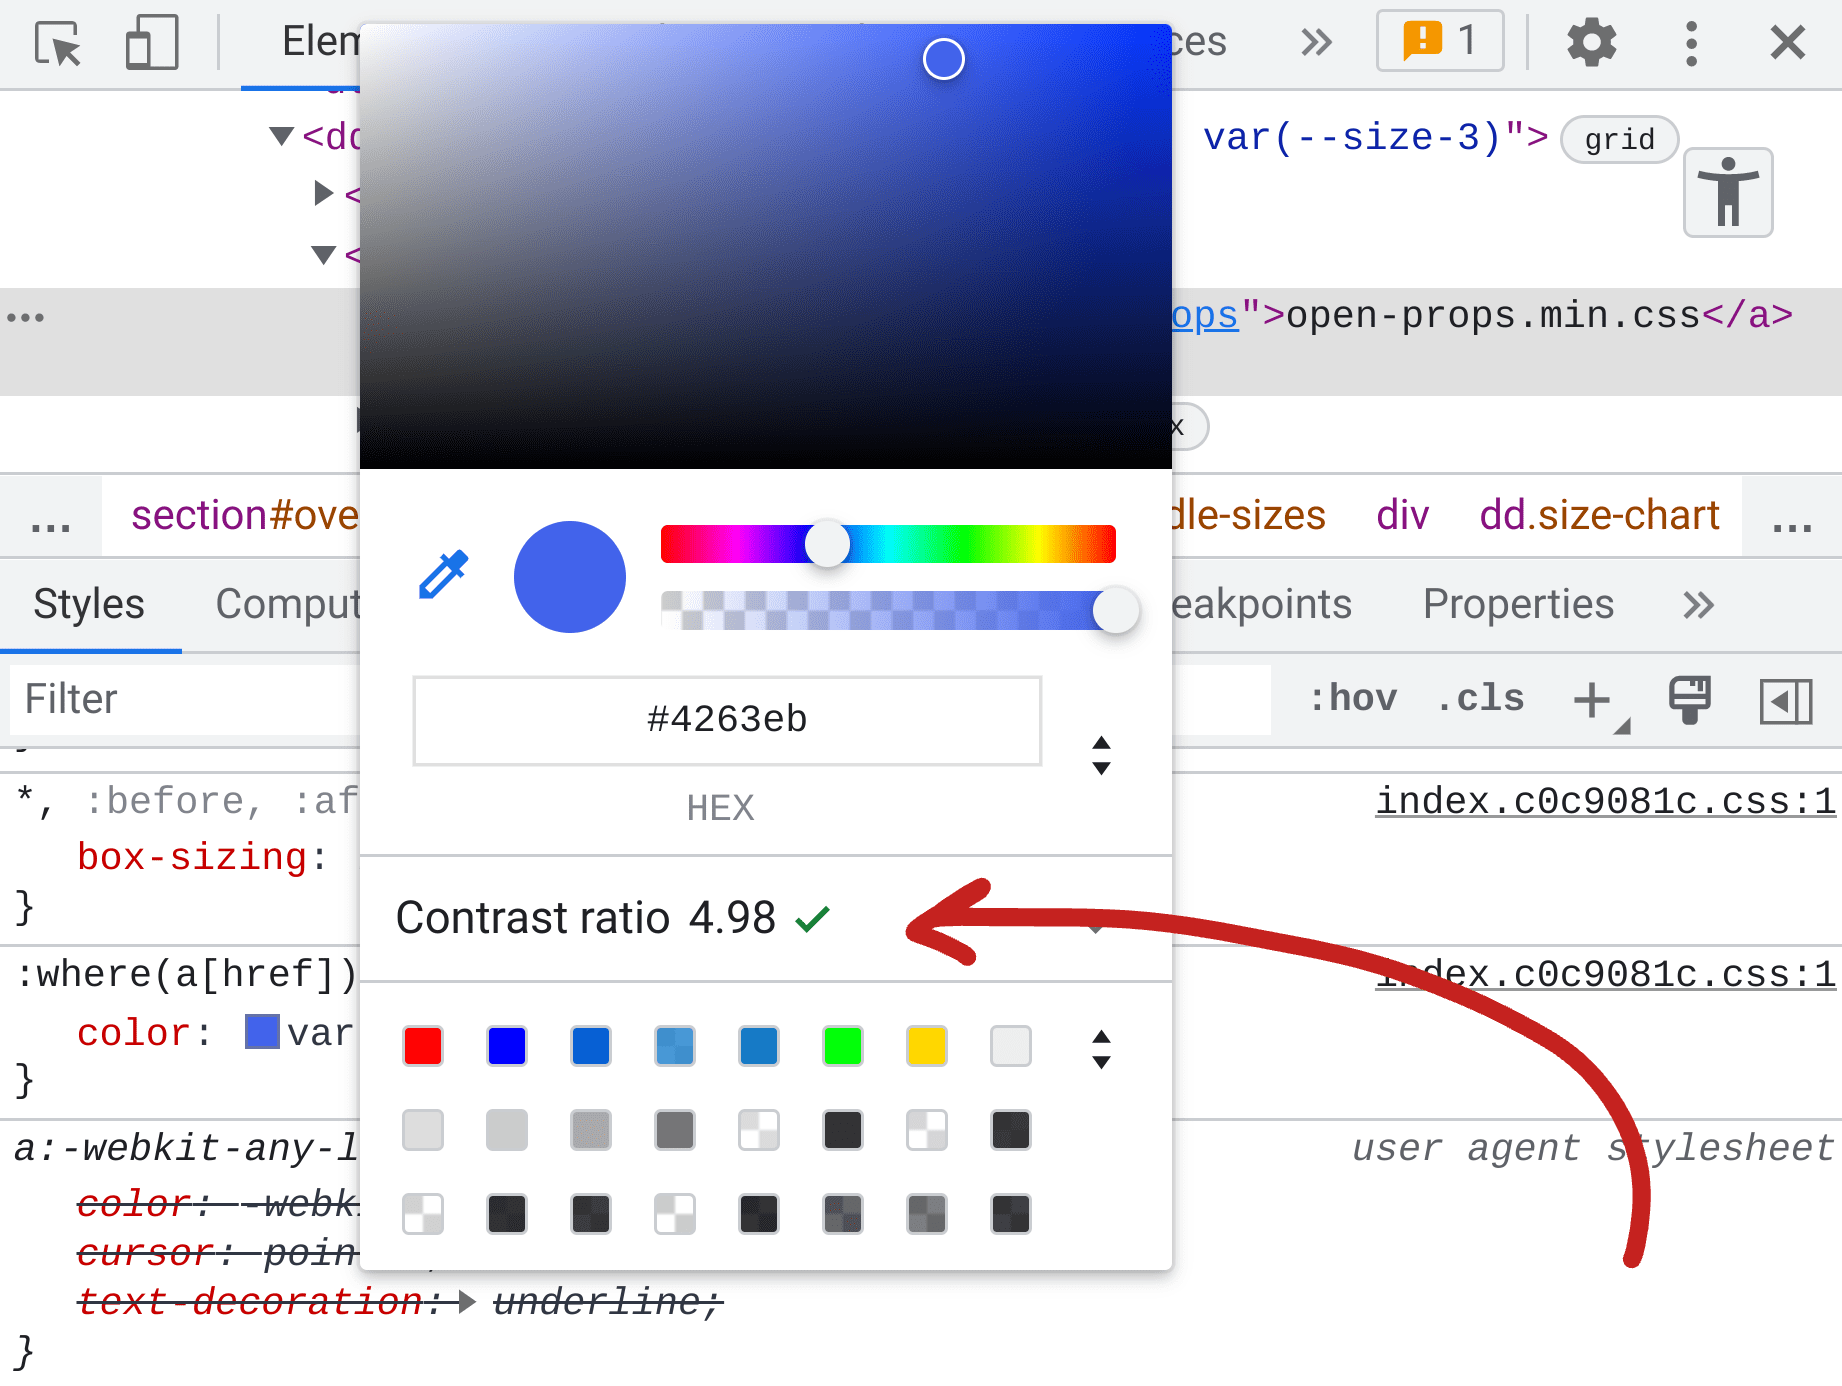 لقطة شاشة للوحة &quot;عناصر أدوات مطوّري البرامج&quot; تبيّن الأنماط التي تظهر فيها أداة اختيار الألوان، وتُبلغ في المنتصف عن نسبة التباين للون 4.98.